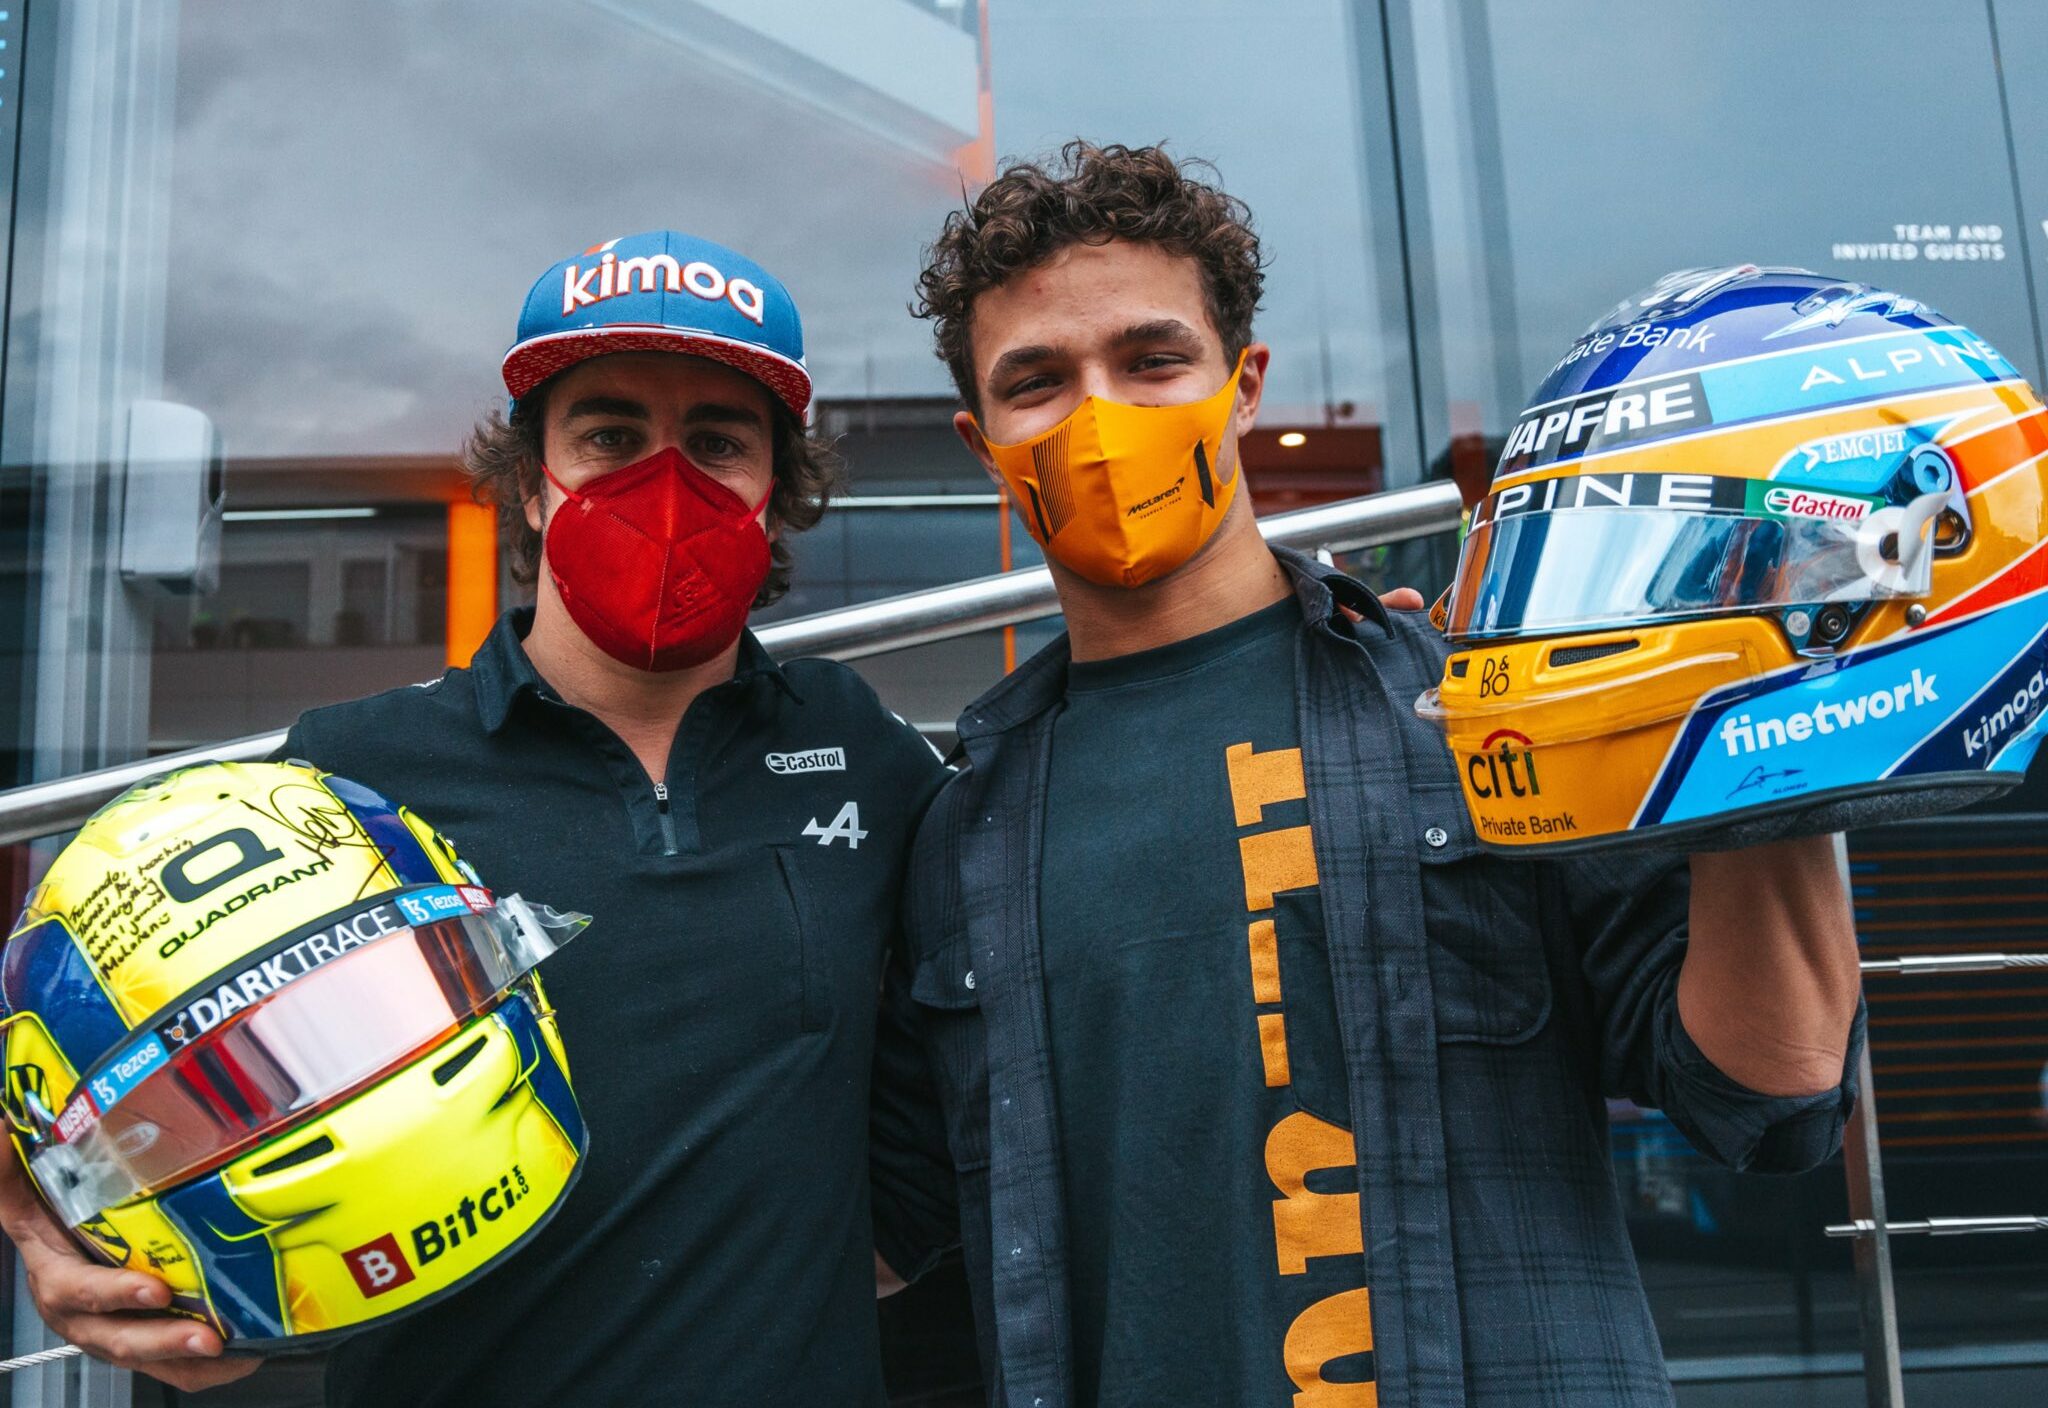 F1 - Alonso complète sa collection de casques avec celui de Norris